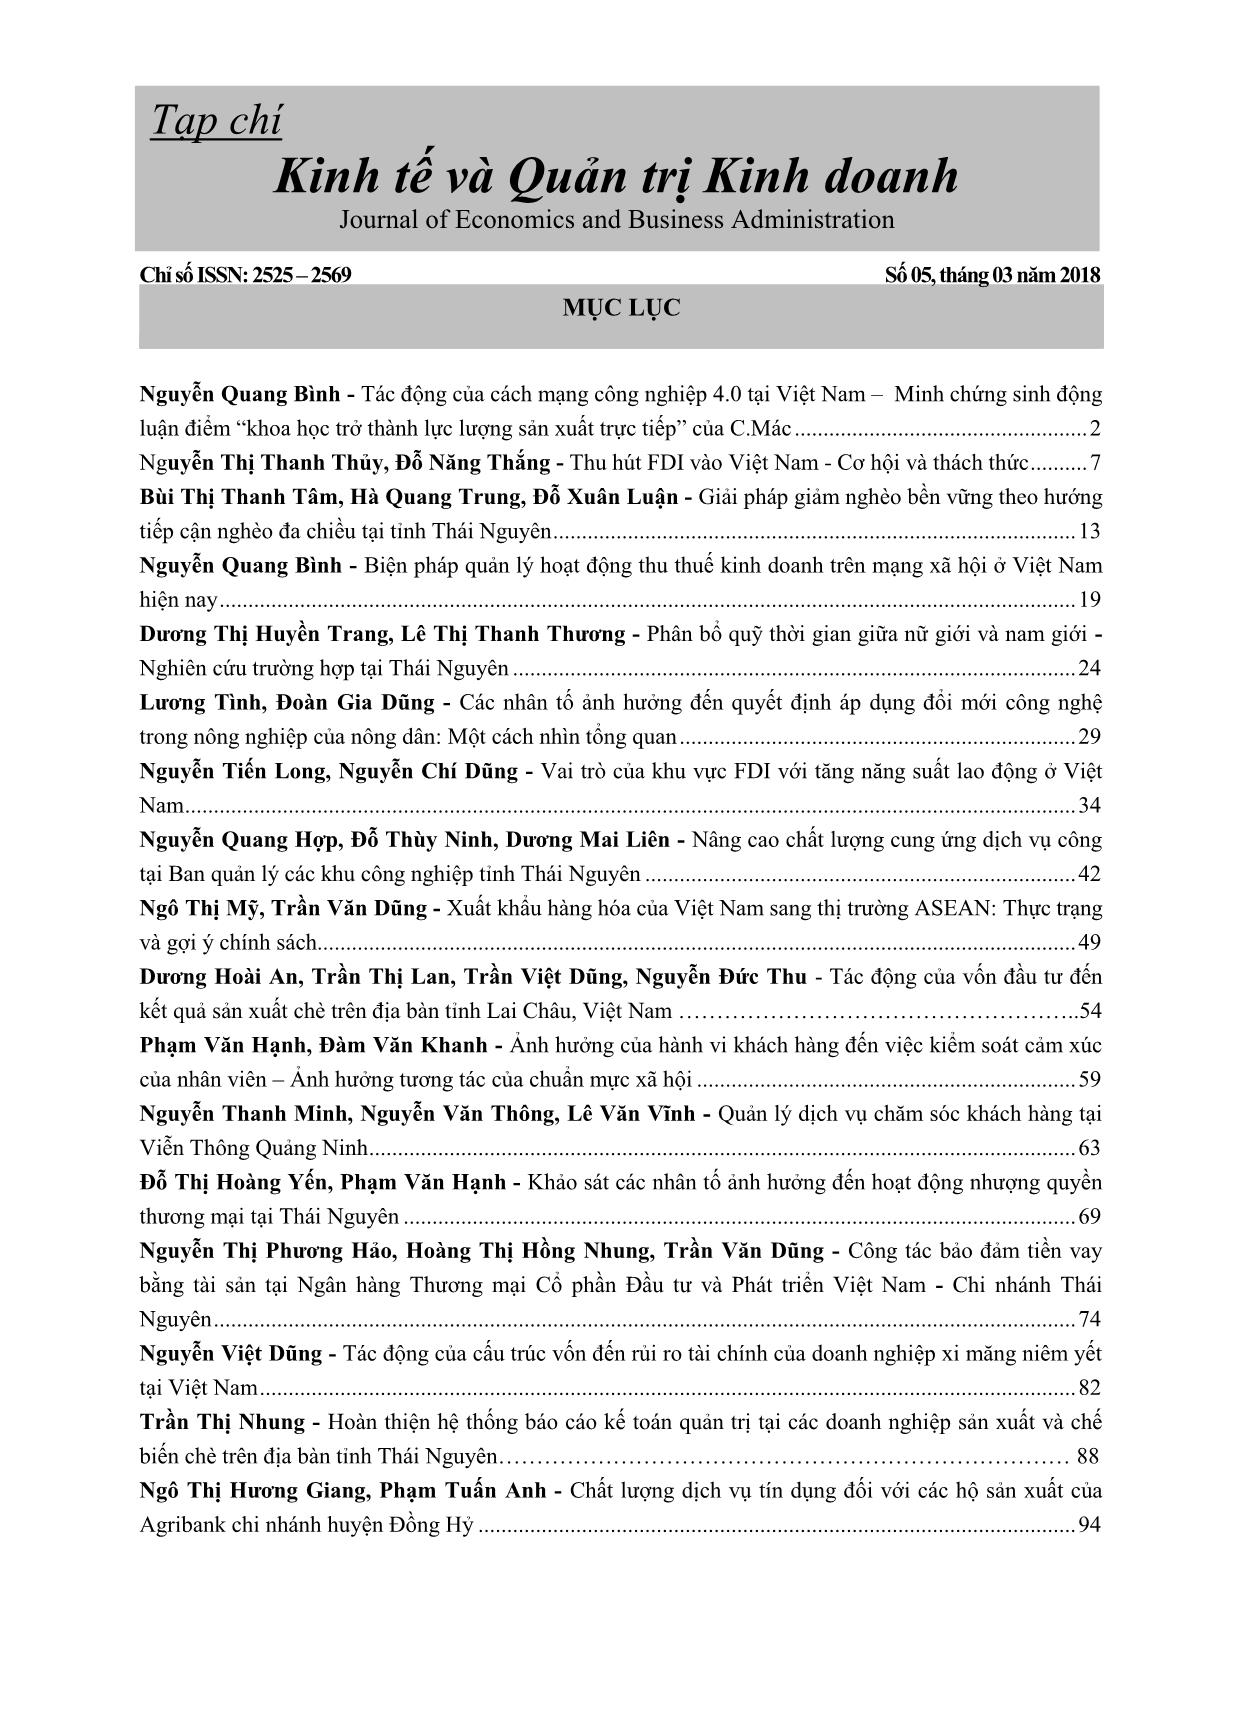 Quản lý dịch vụ chăm sóc khách hàng tại viễn thông Quảng Ninh trang 1